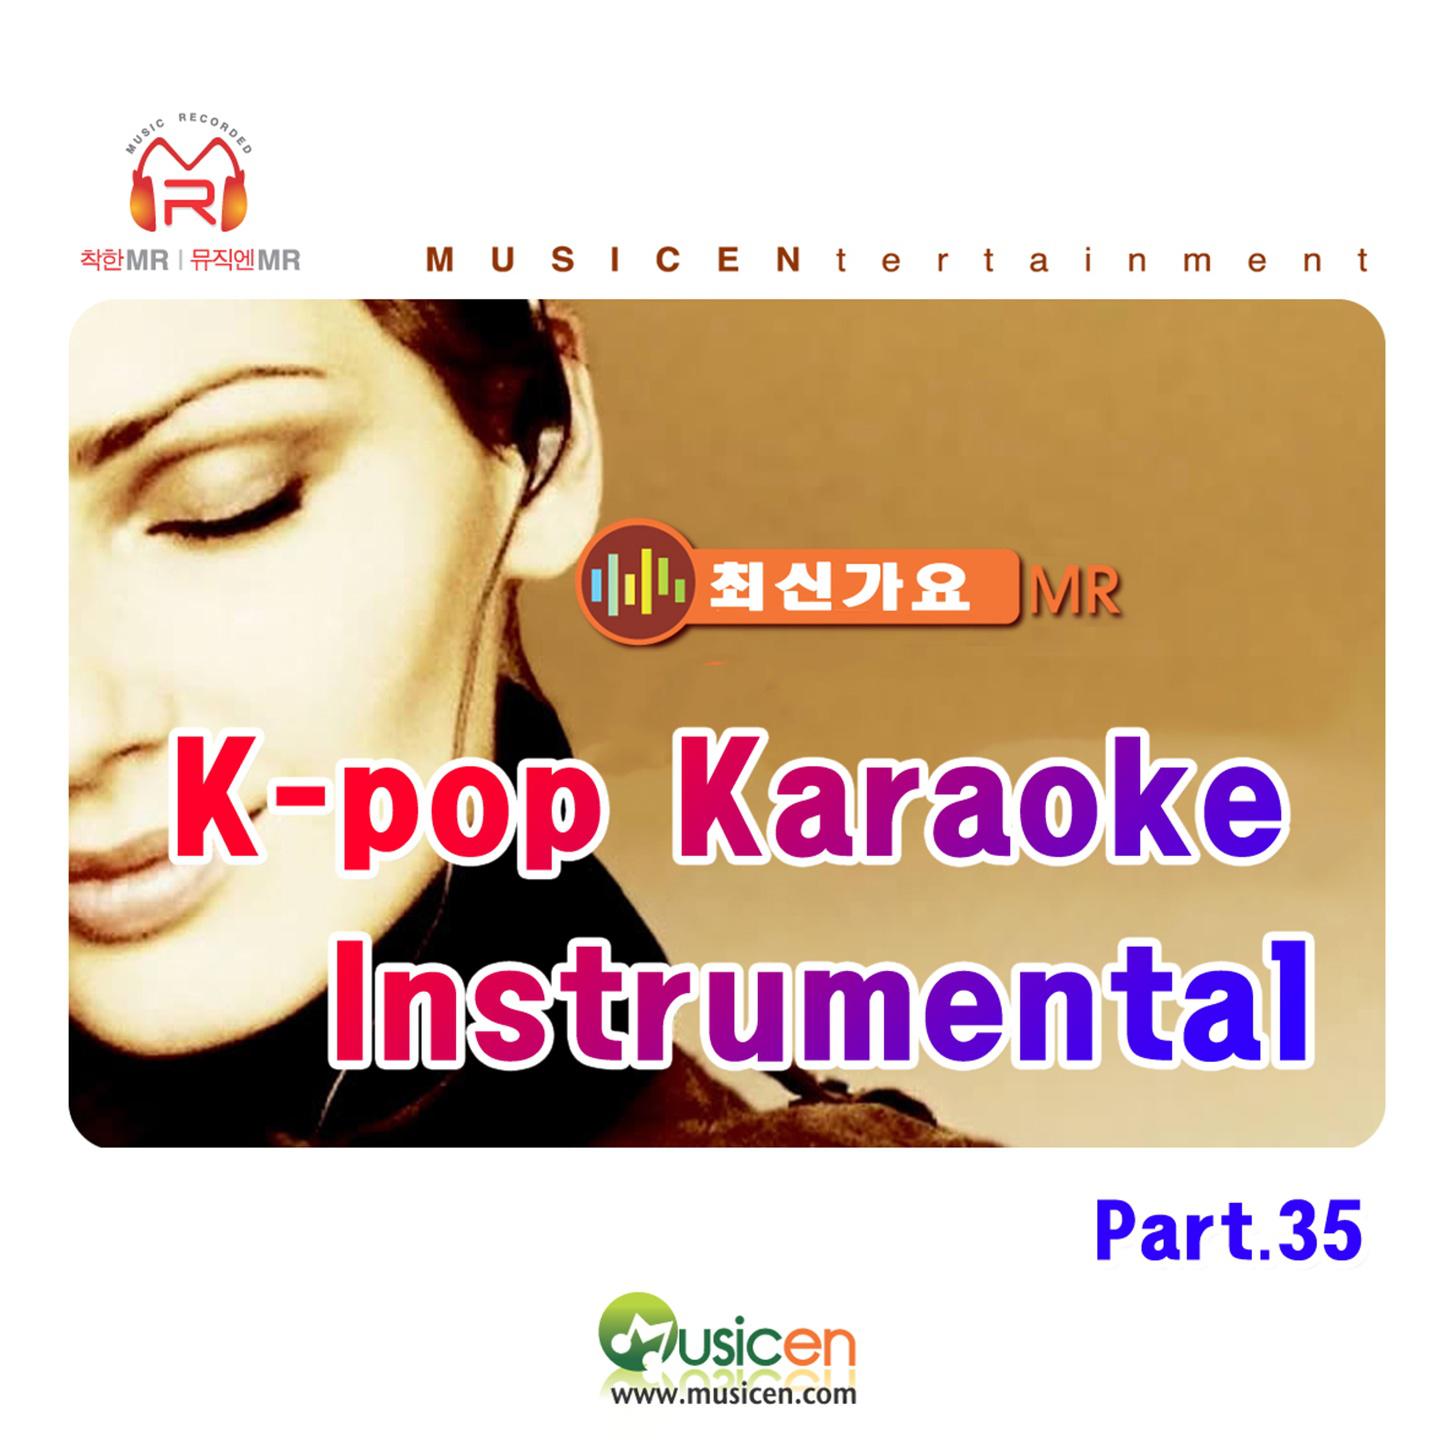 KPop Karaoke Instrumental  MR Part 35